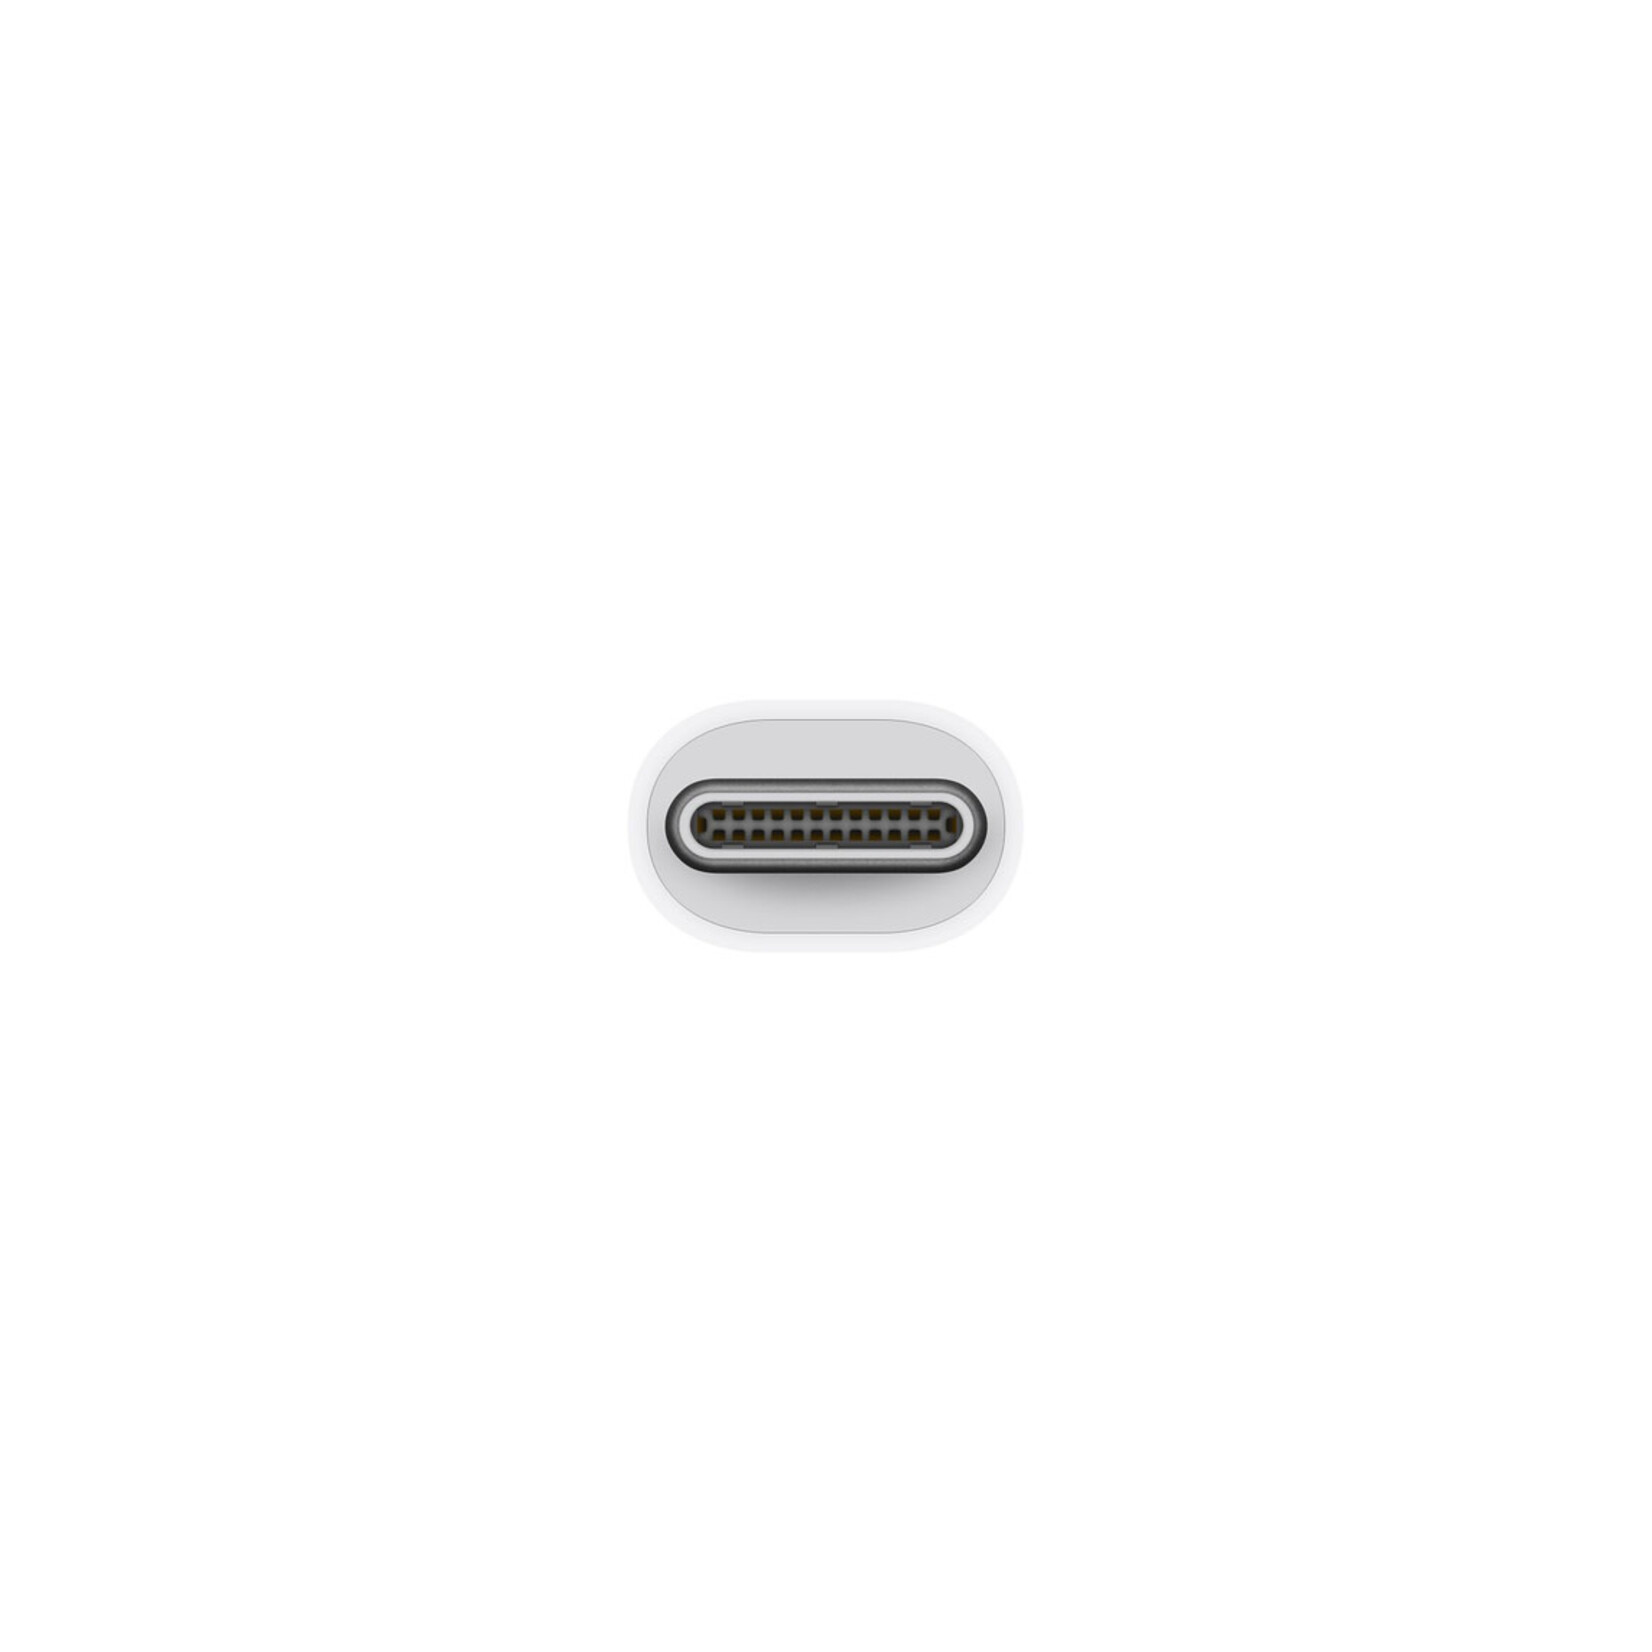 Apple Thunderbolt 3 (usb-c) to Thunderbolt 2 adaptor